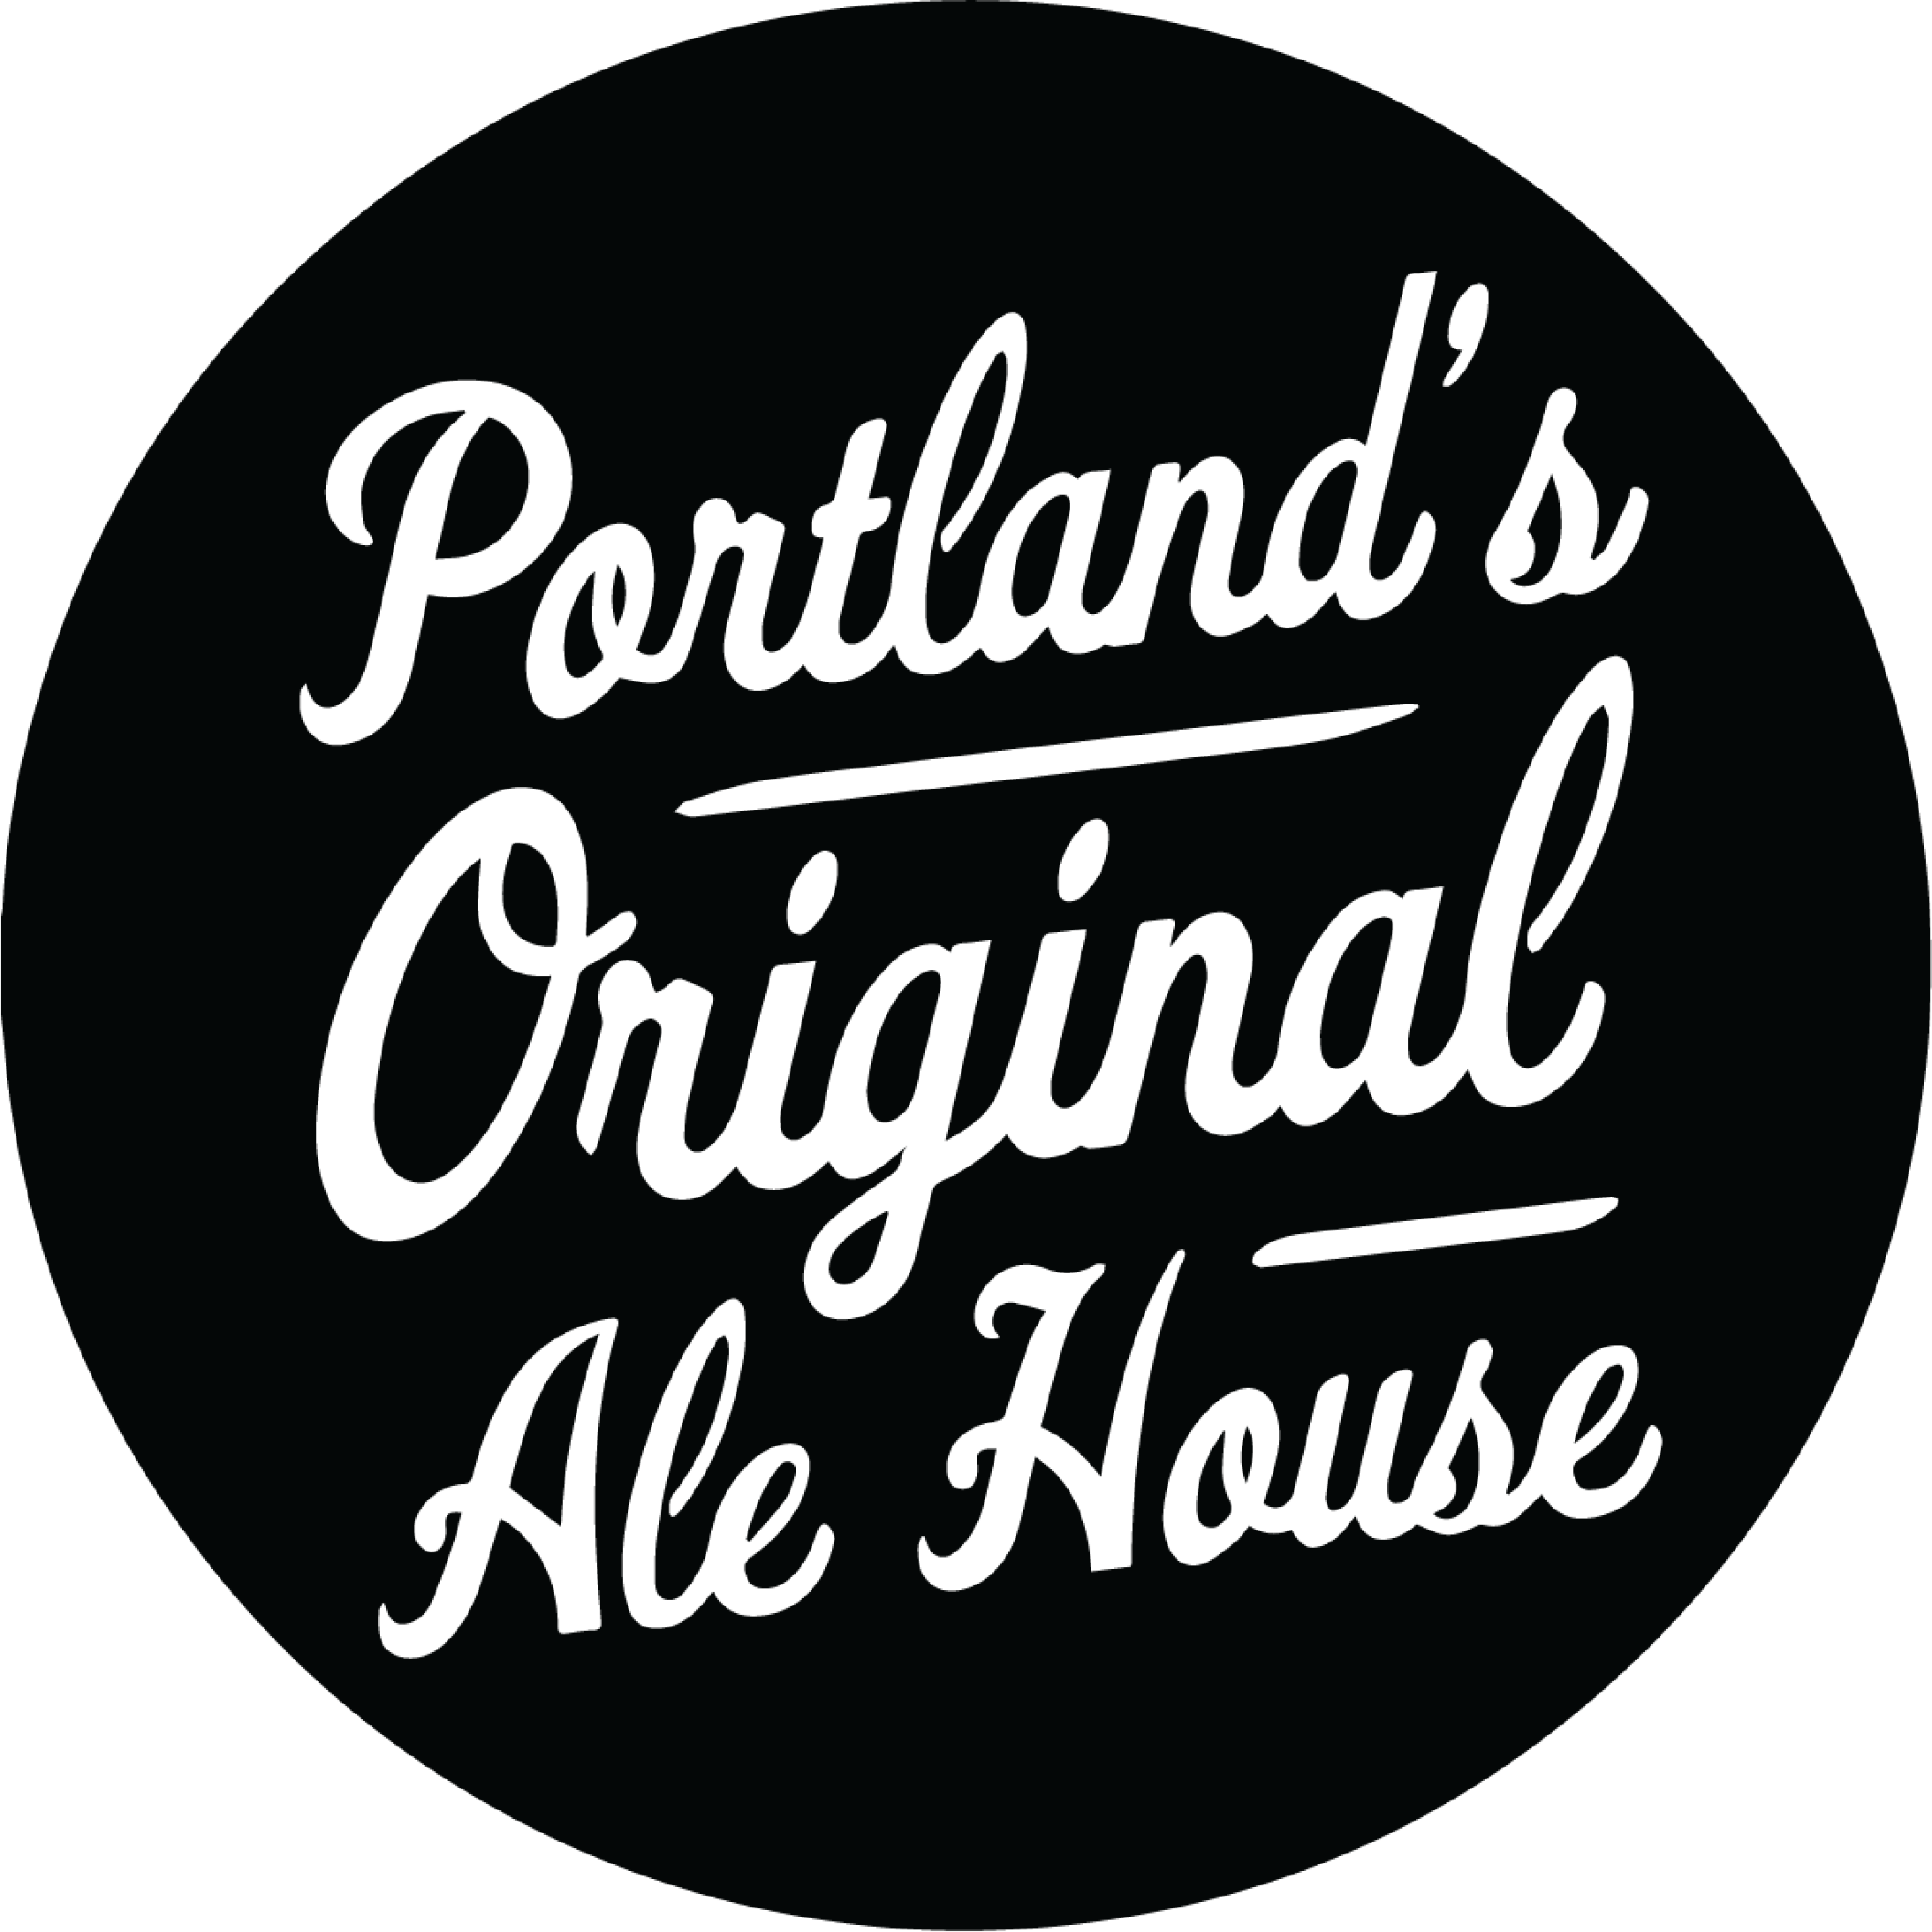 "Portland's Original Ale House" emblem